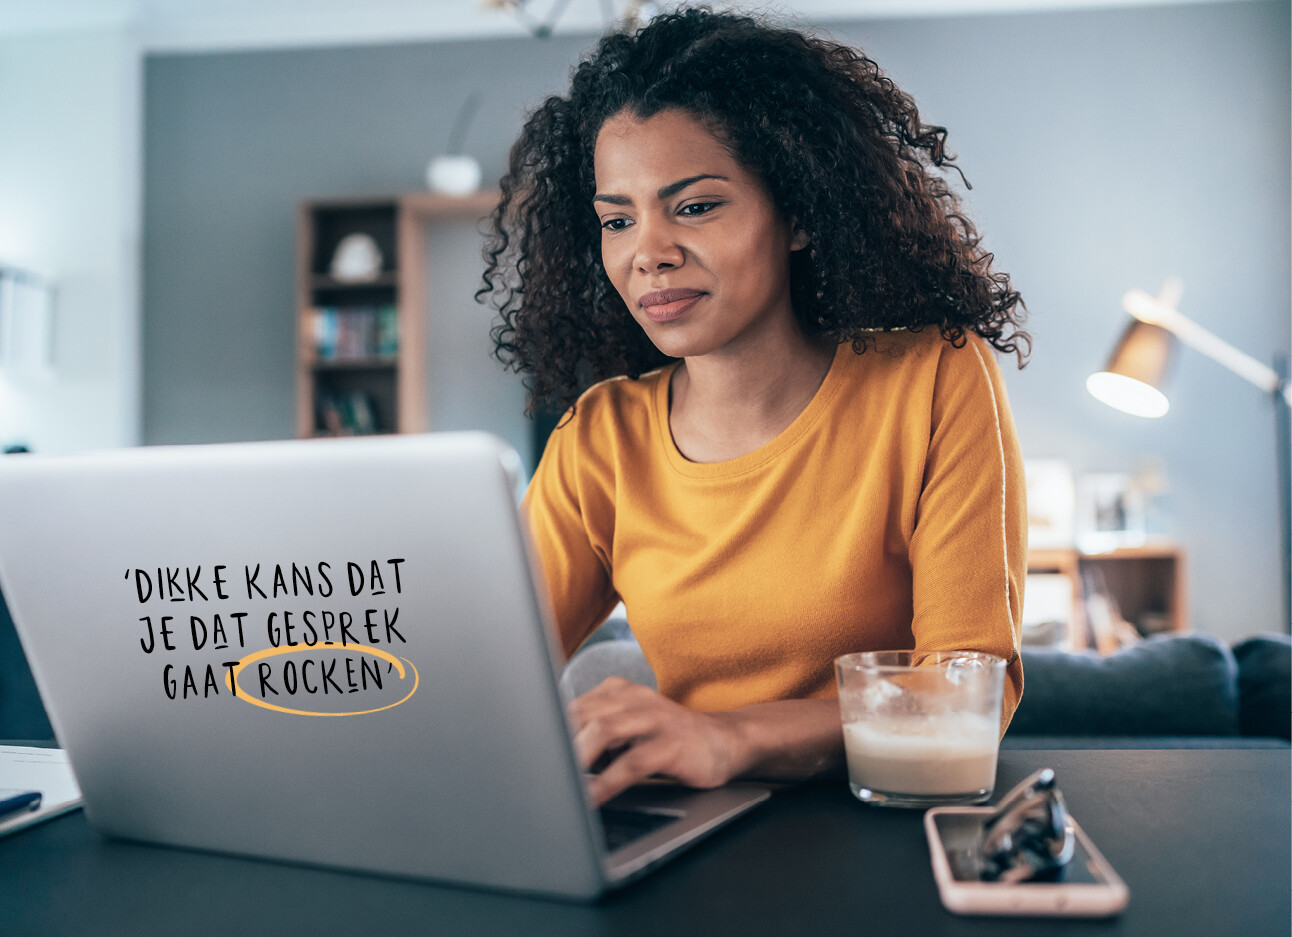 vrouw lachend achter computer met een mosterd kleurig tshirt aan het een kop koffie